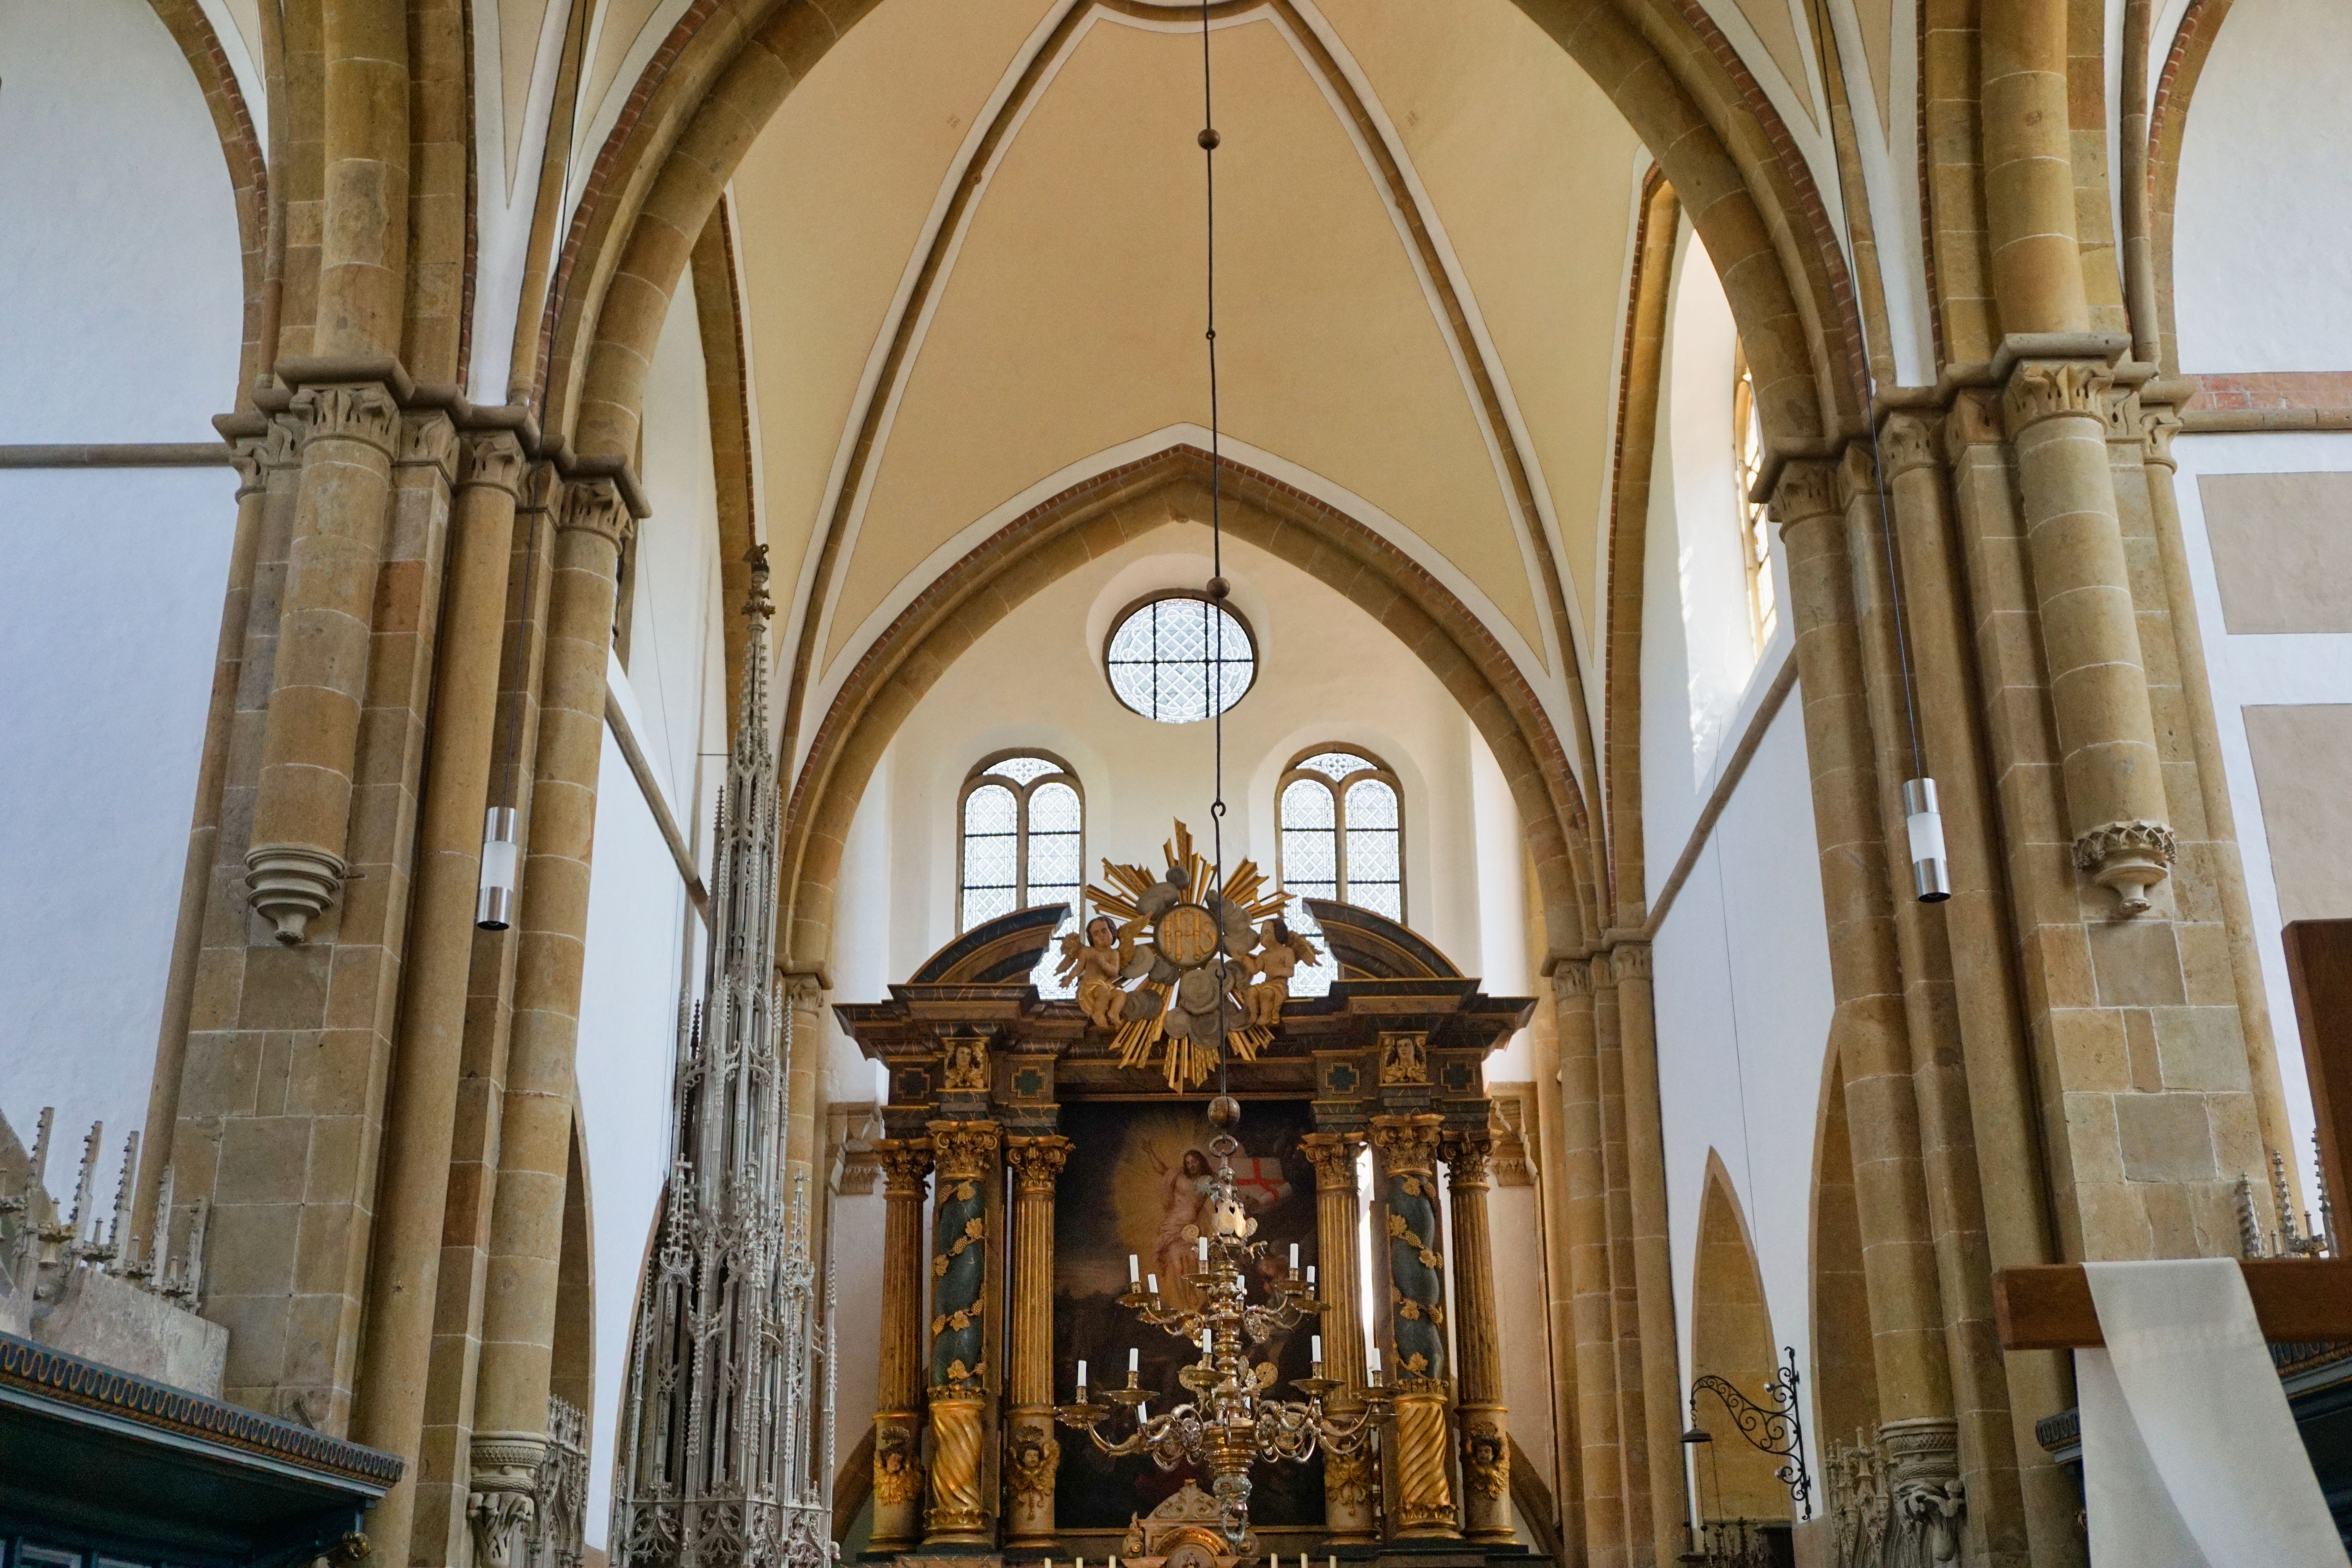 Impressionen Innenraum der Abteikirche Marienfeld, Harsewinkel.
